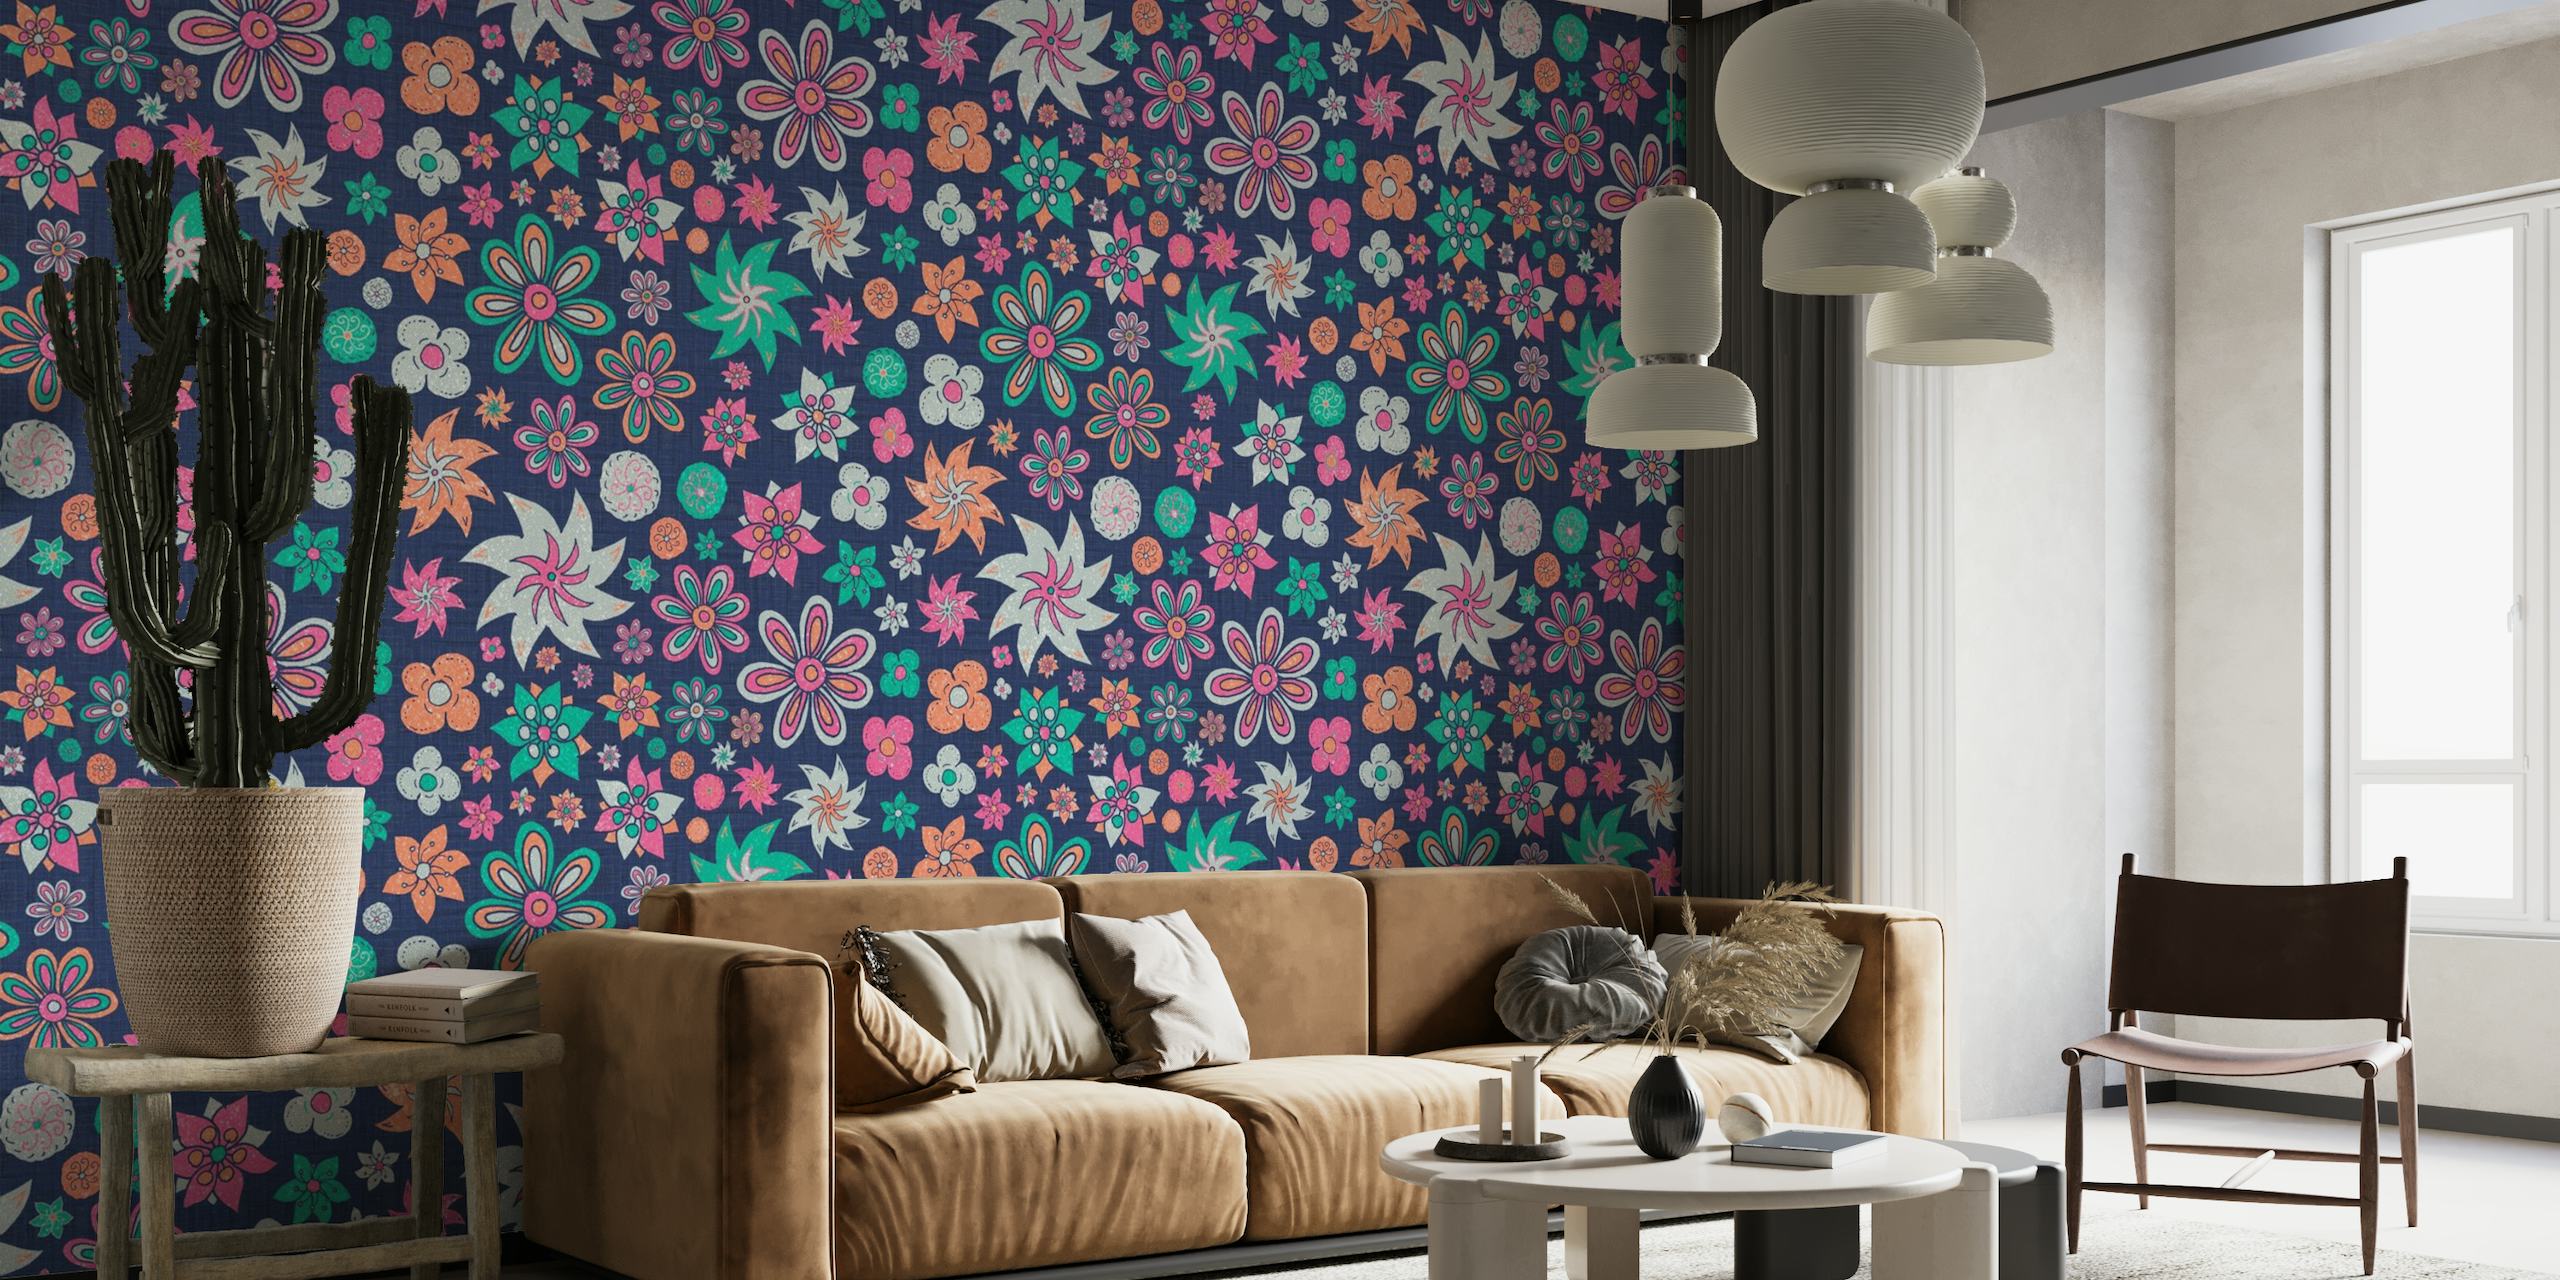 Design de mural de parede de flores maximalistas vibrantes e coloridas da primavera